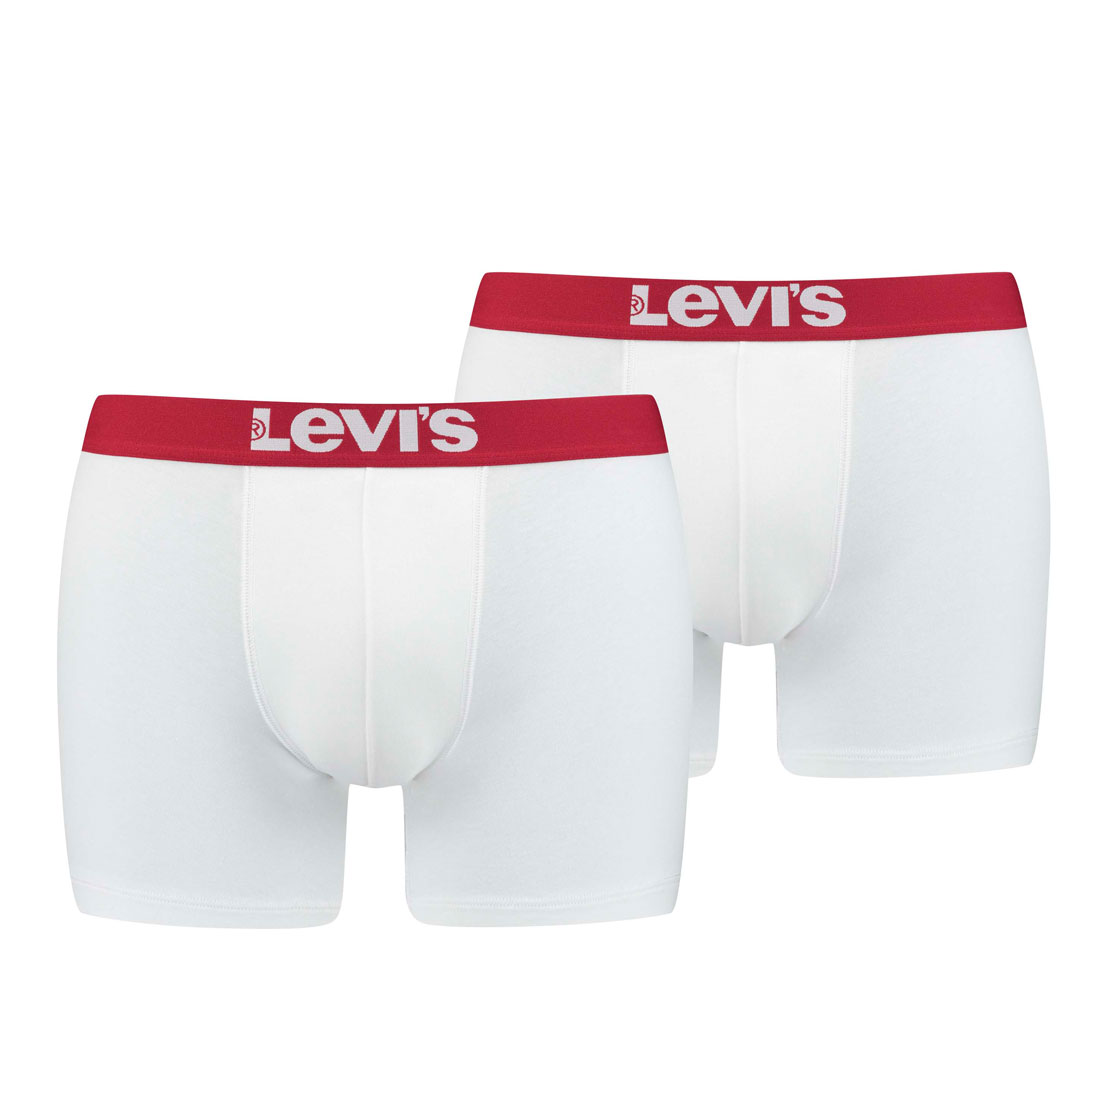 Levi's Herren Levis Men SOLID Basic Boxer 2P Boxershorts, Weiß (White/White 317), Medium (Herstellergröße: 020) (2er Pack)